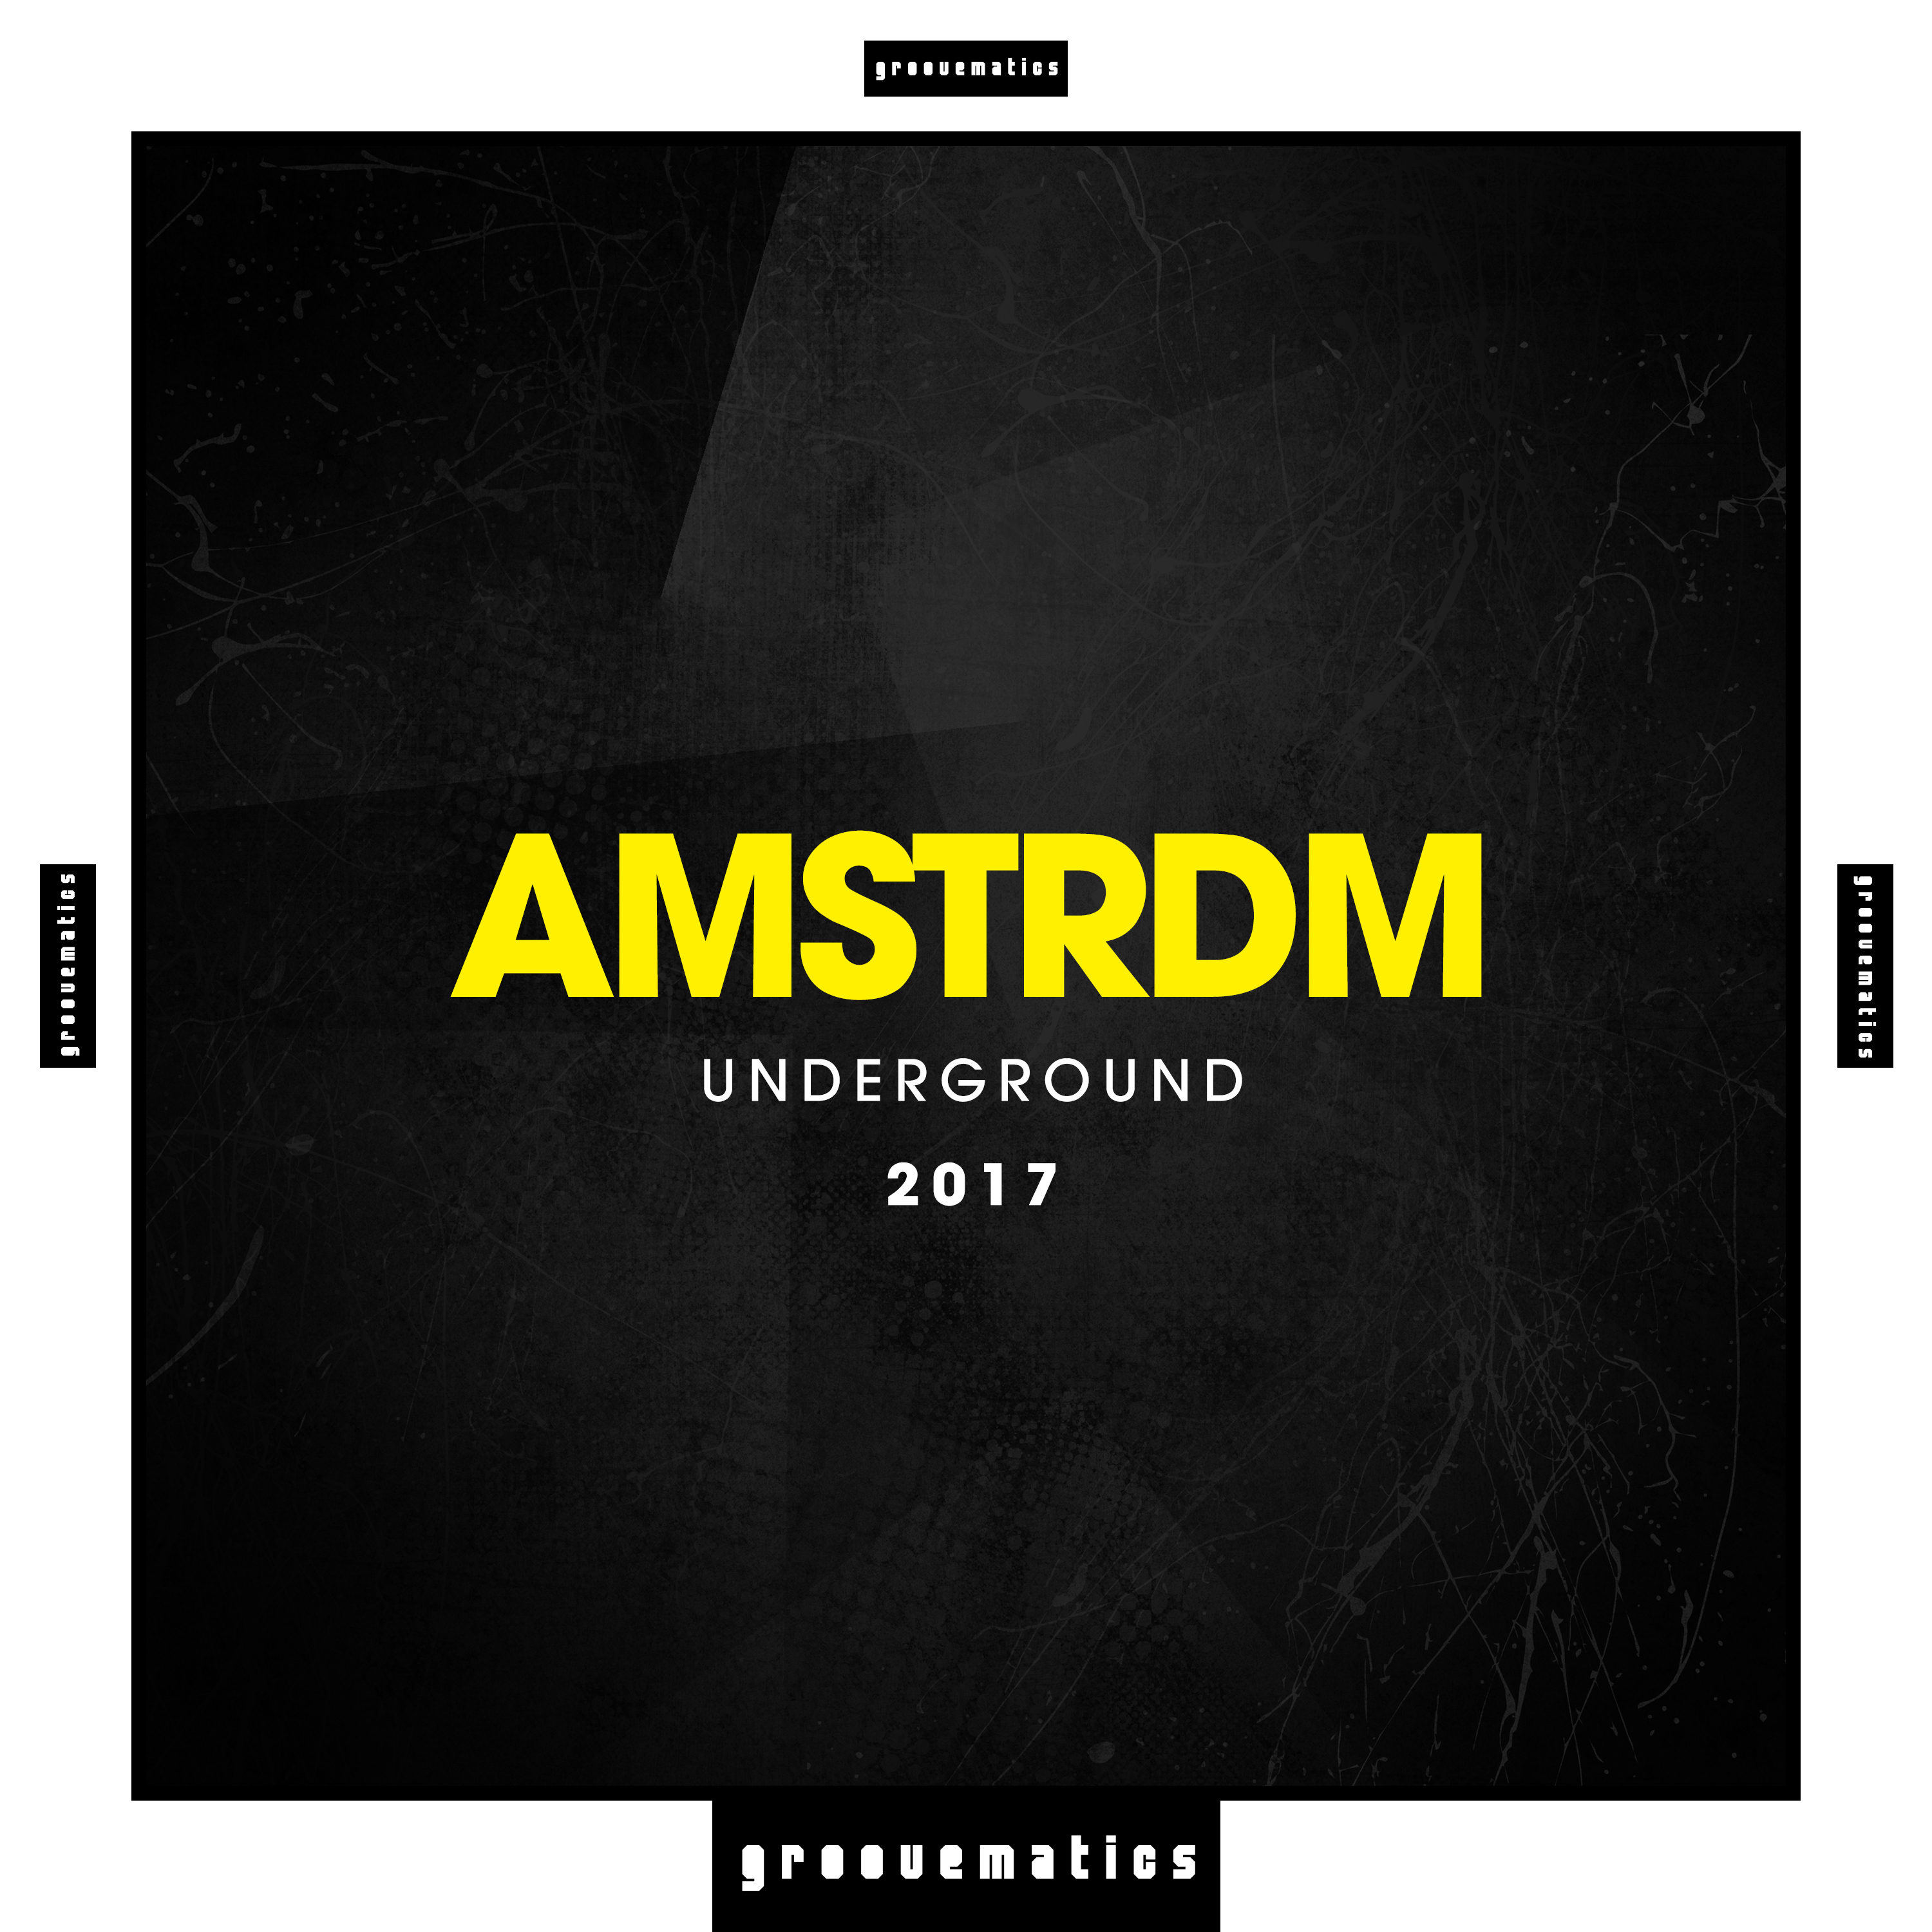 AMSTRDM Underground 2017